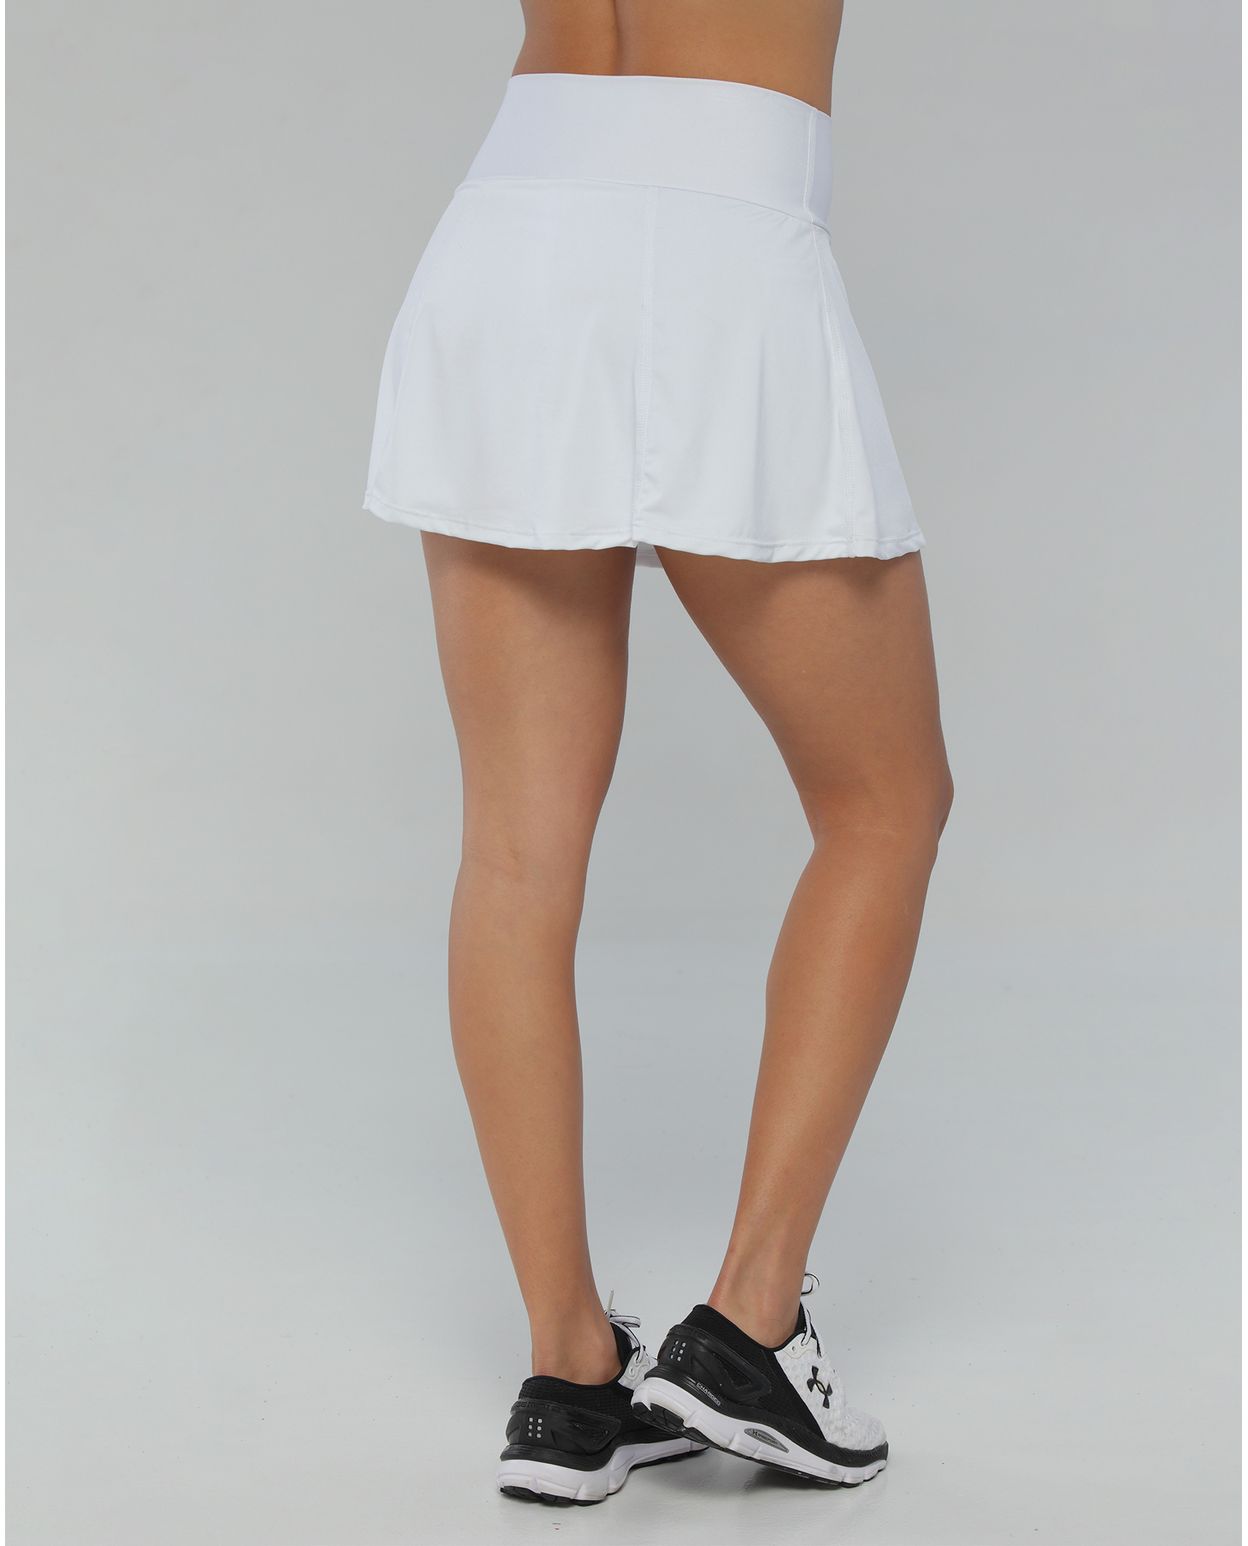 Falda para mujer, licra, color blanco - racketball movil